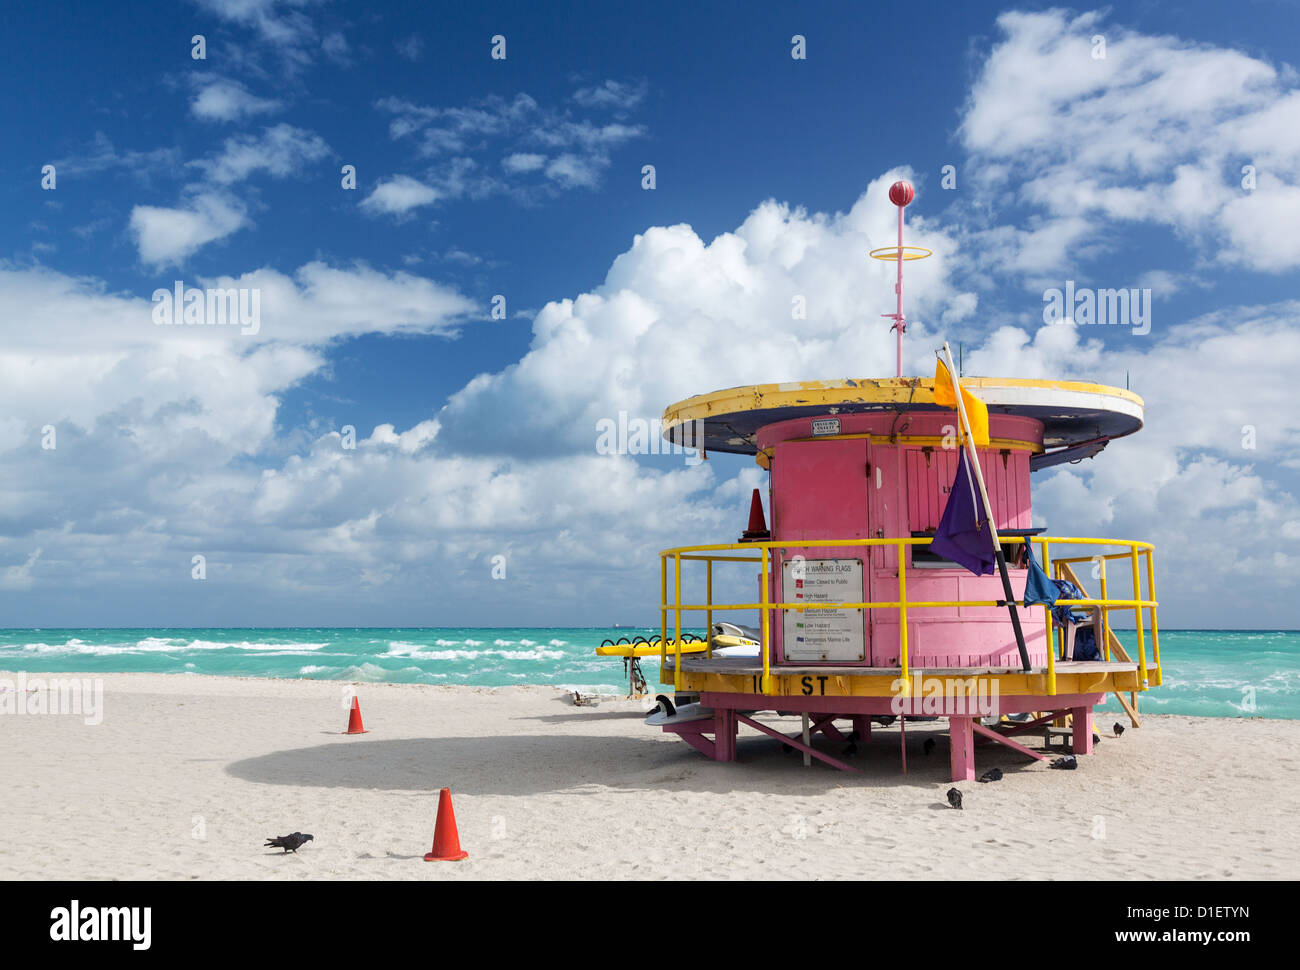 Miami beach, Florida, USA - lifeguard station Stock Photo